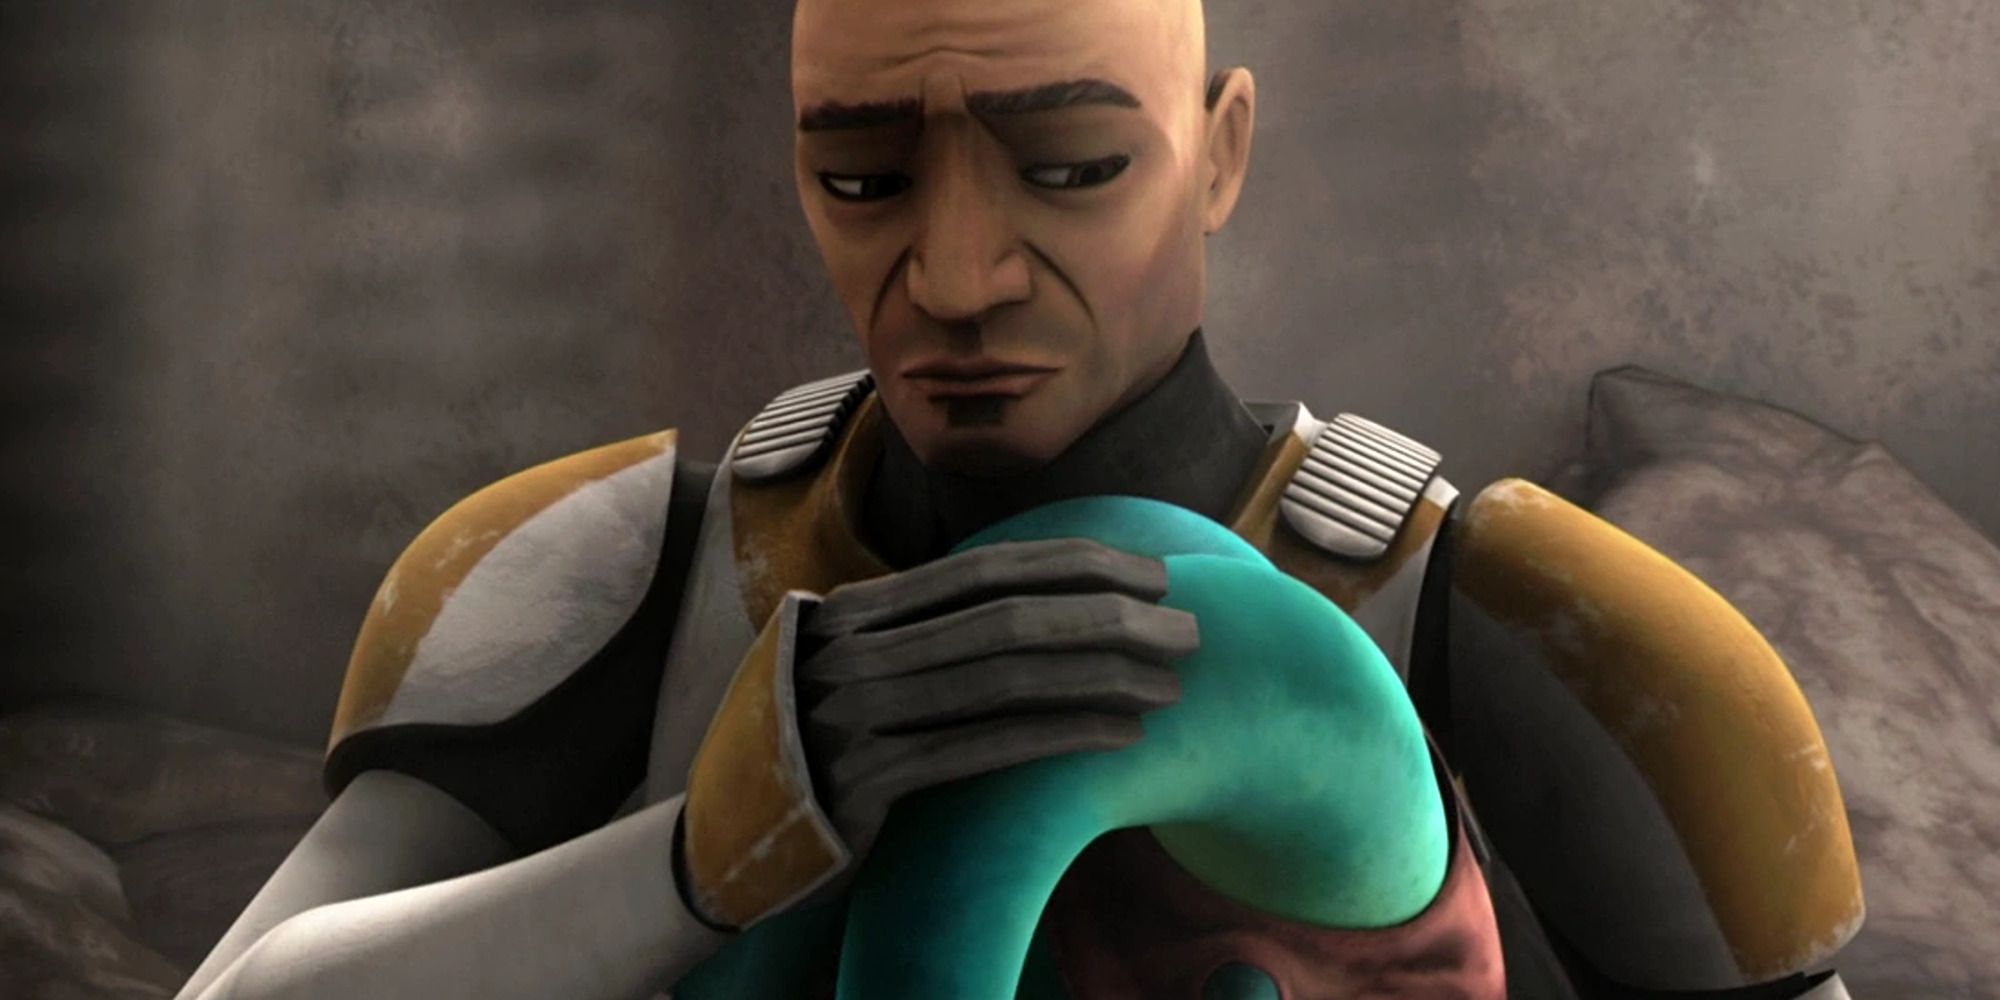 clone trooper hugging a little alien girl